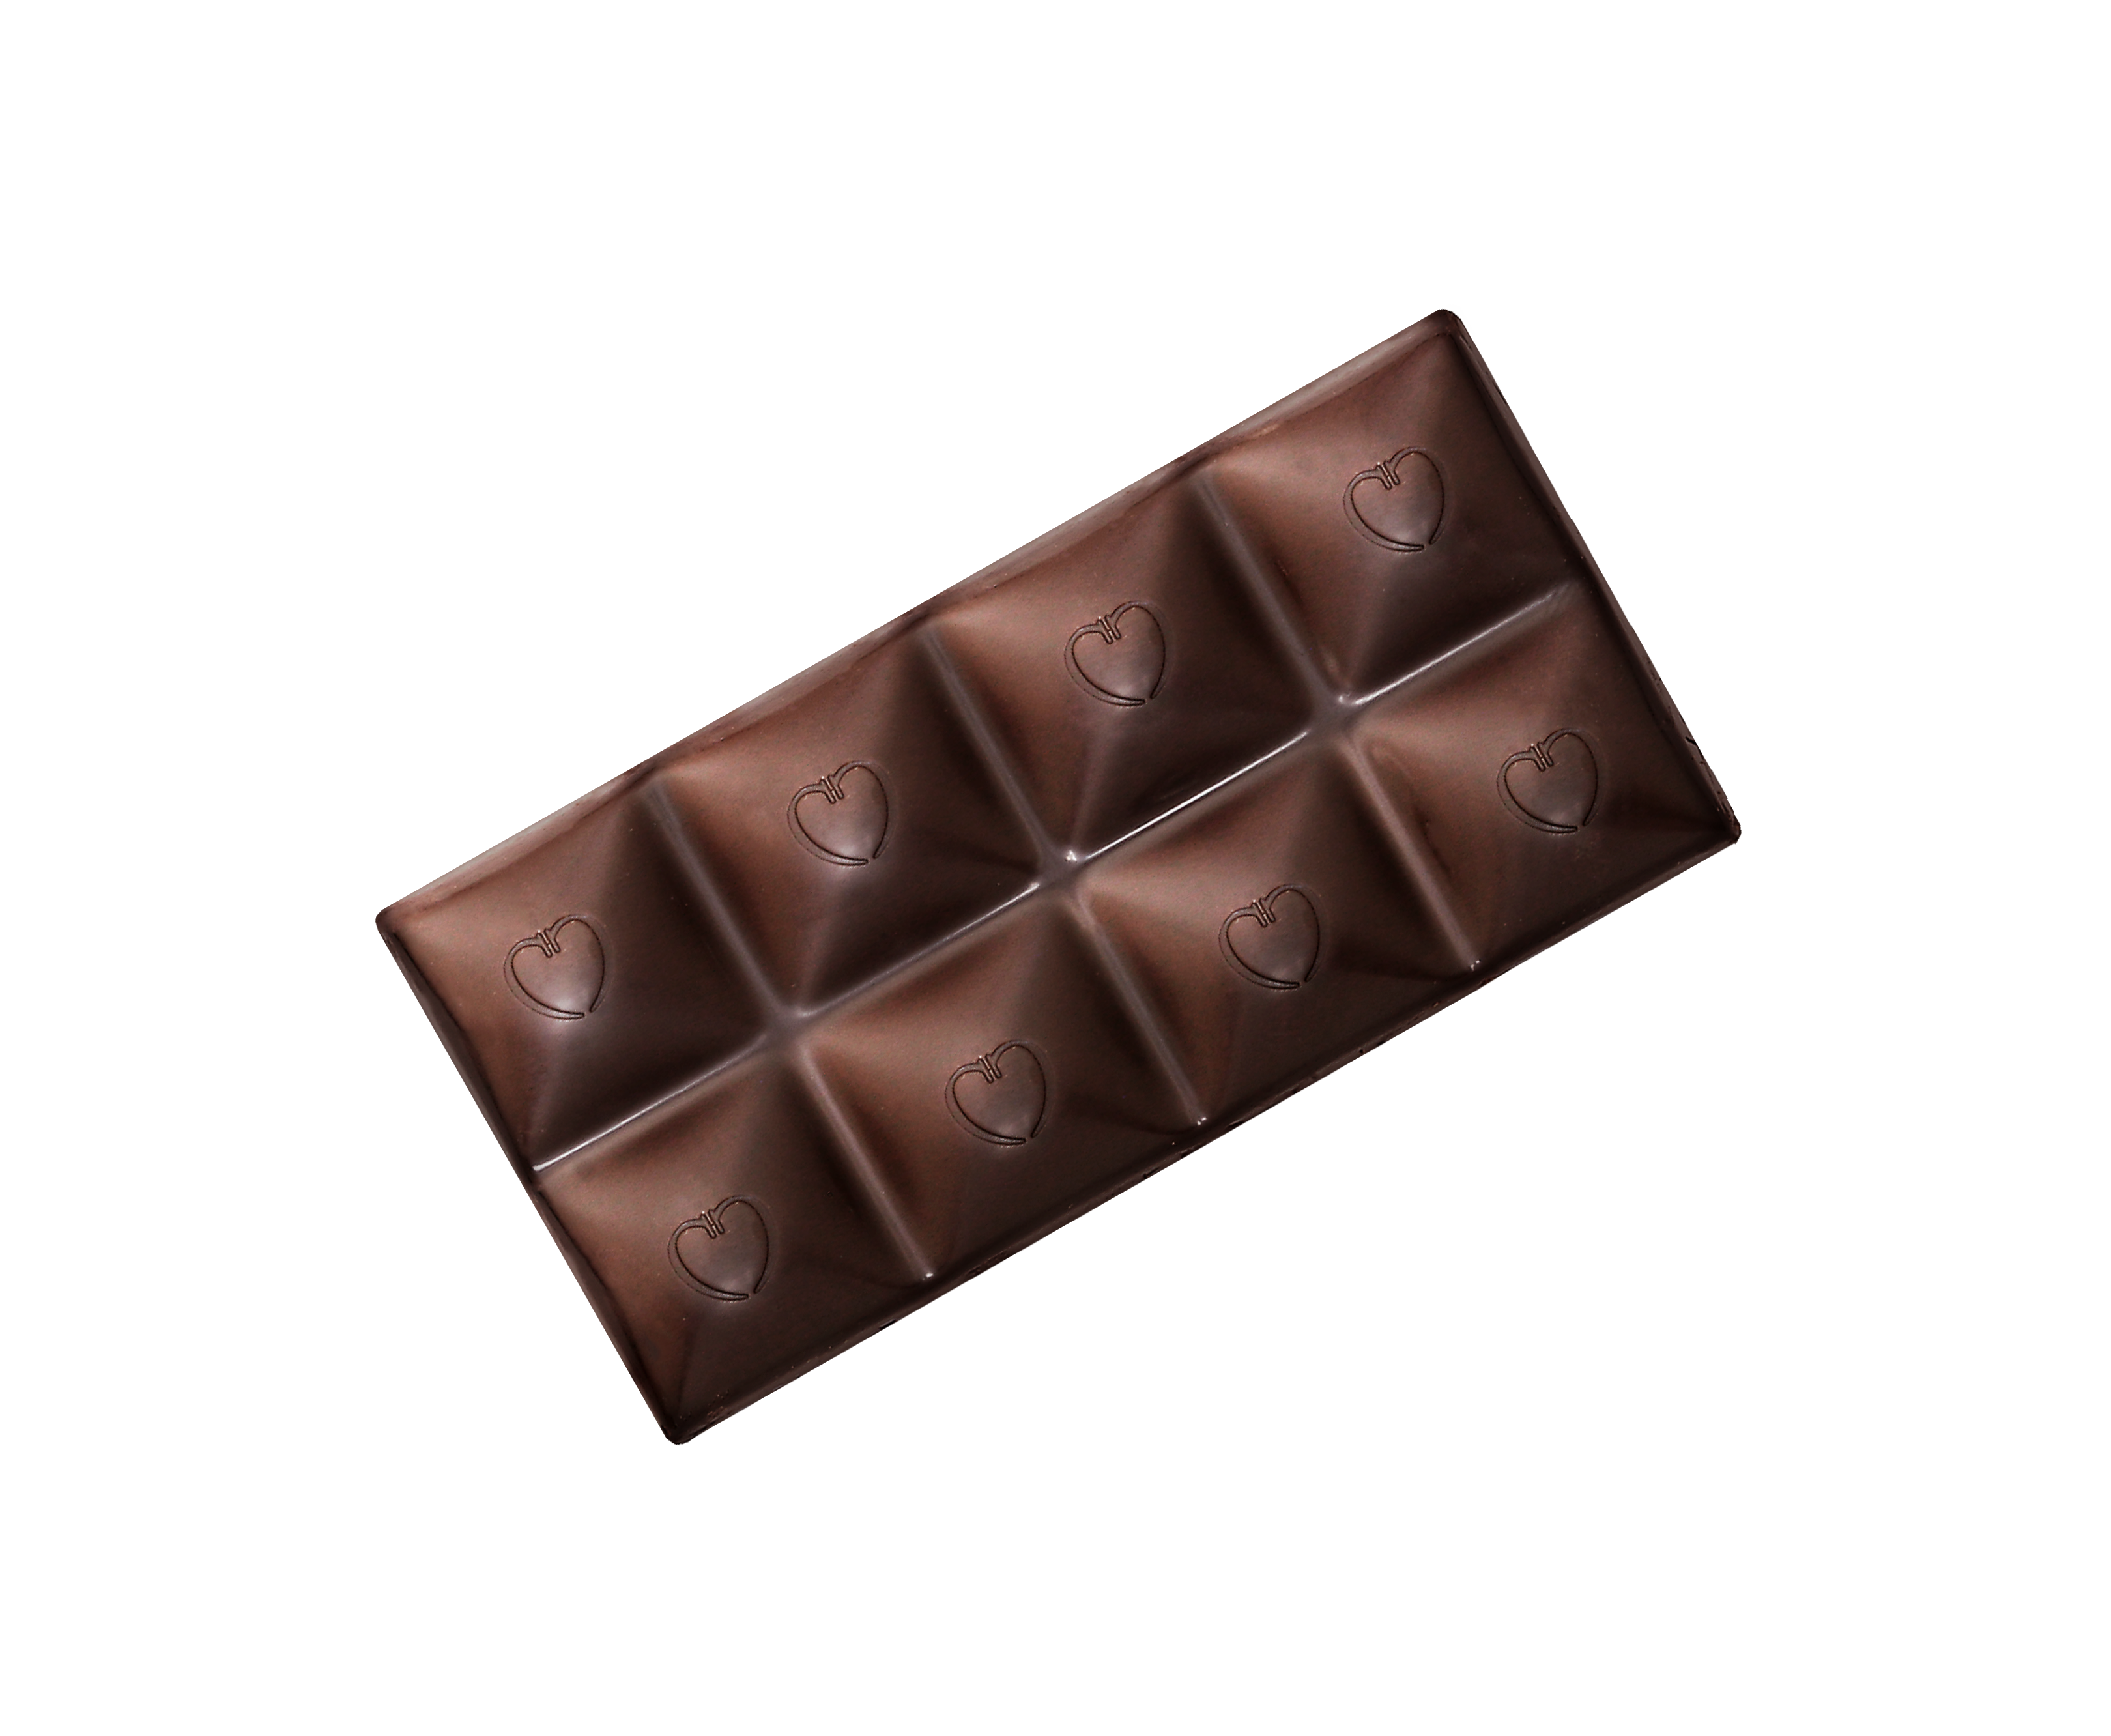 Ruby Chocolate - Chocolove - Premium Chocolate